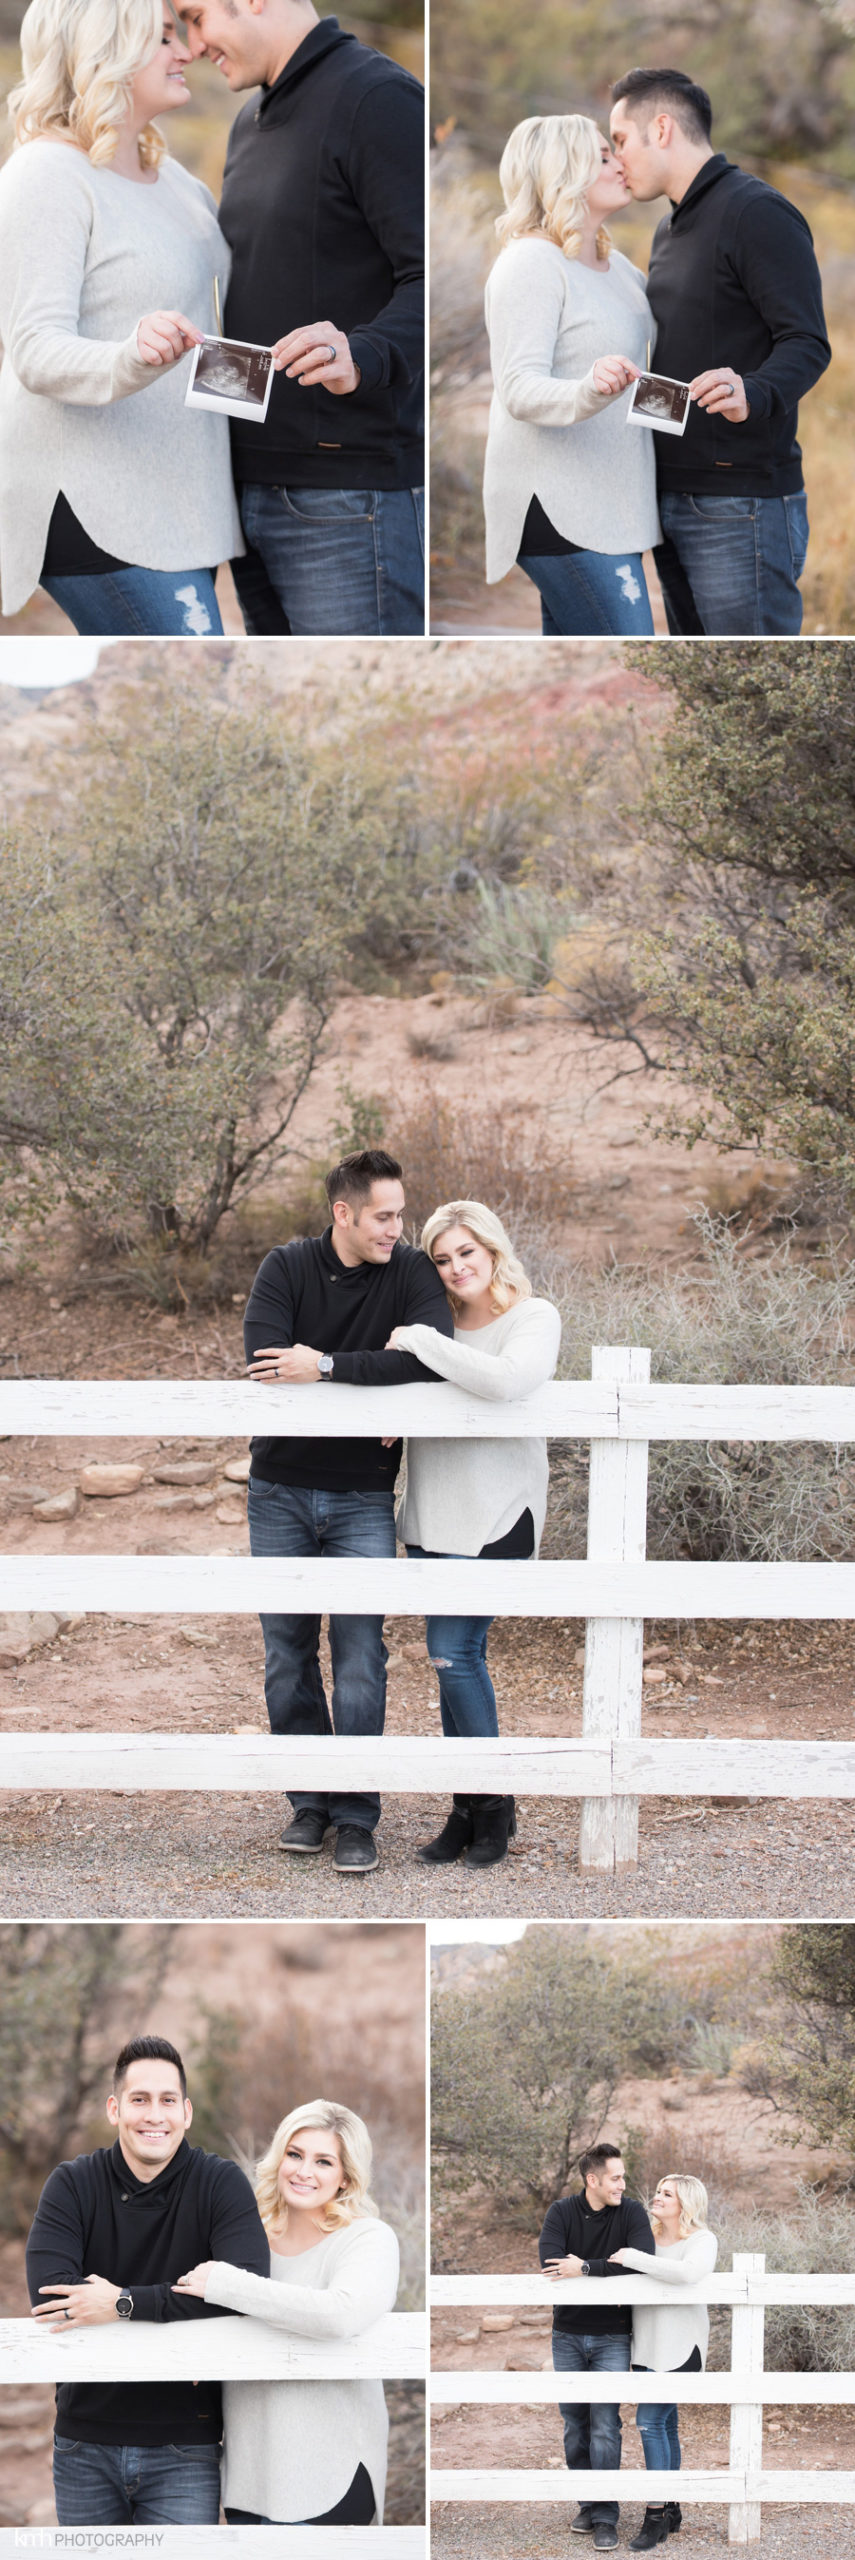 Pregnancy Announcement & Couple's Session at Spring Mountain Ranch | KMH Photography, Las Vegas Portrait Photographer